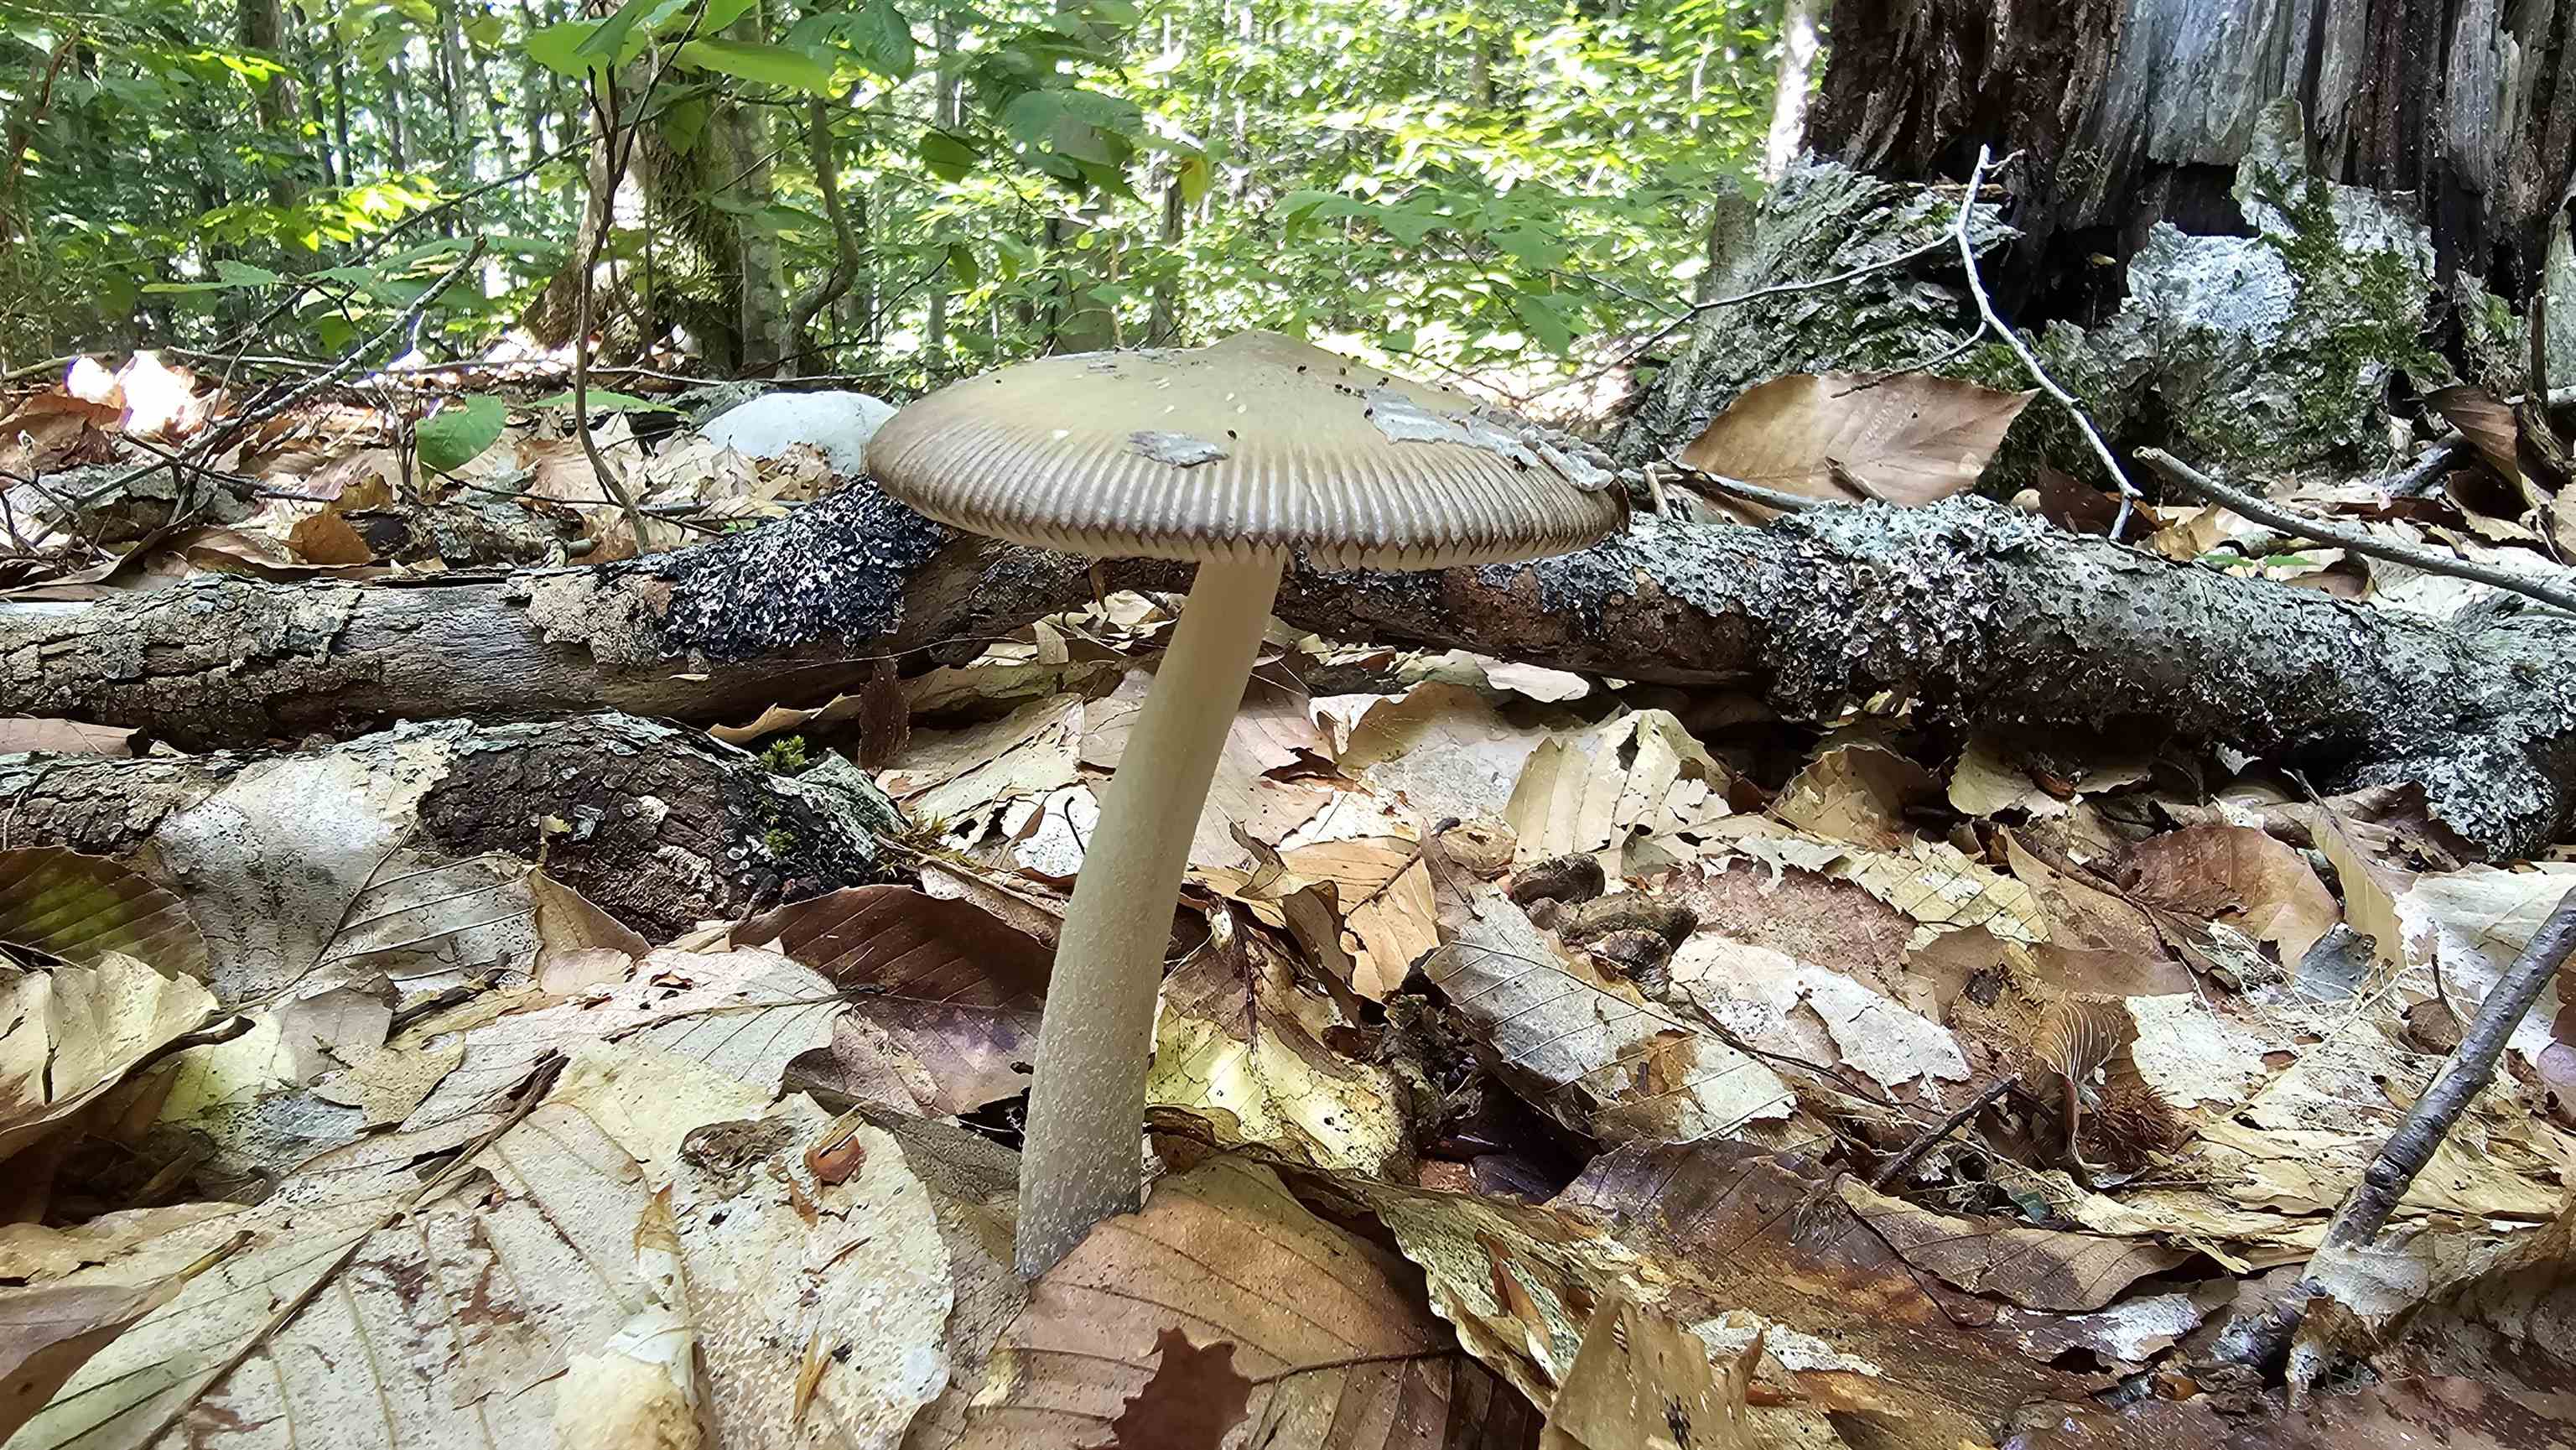 Mushroom foragers paradise! You'll be amazed...